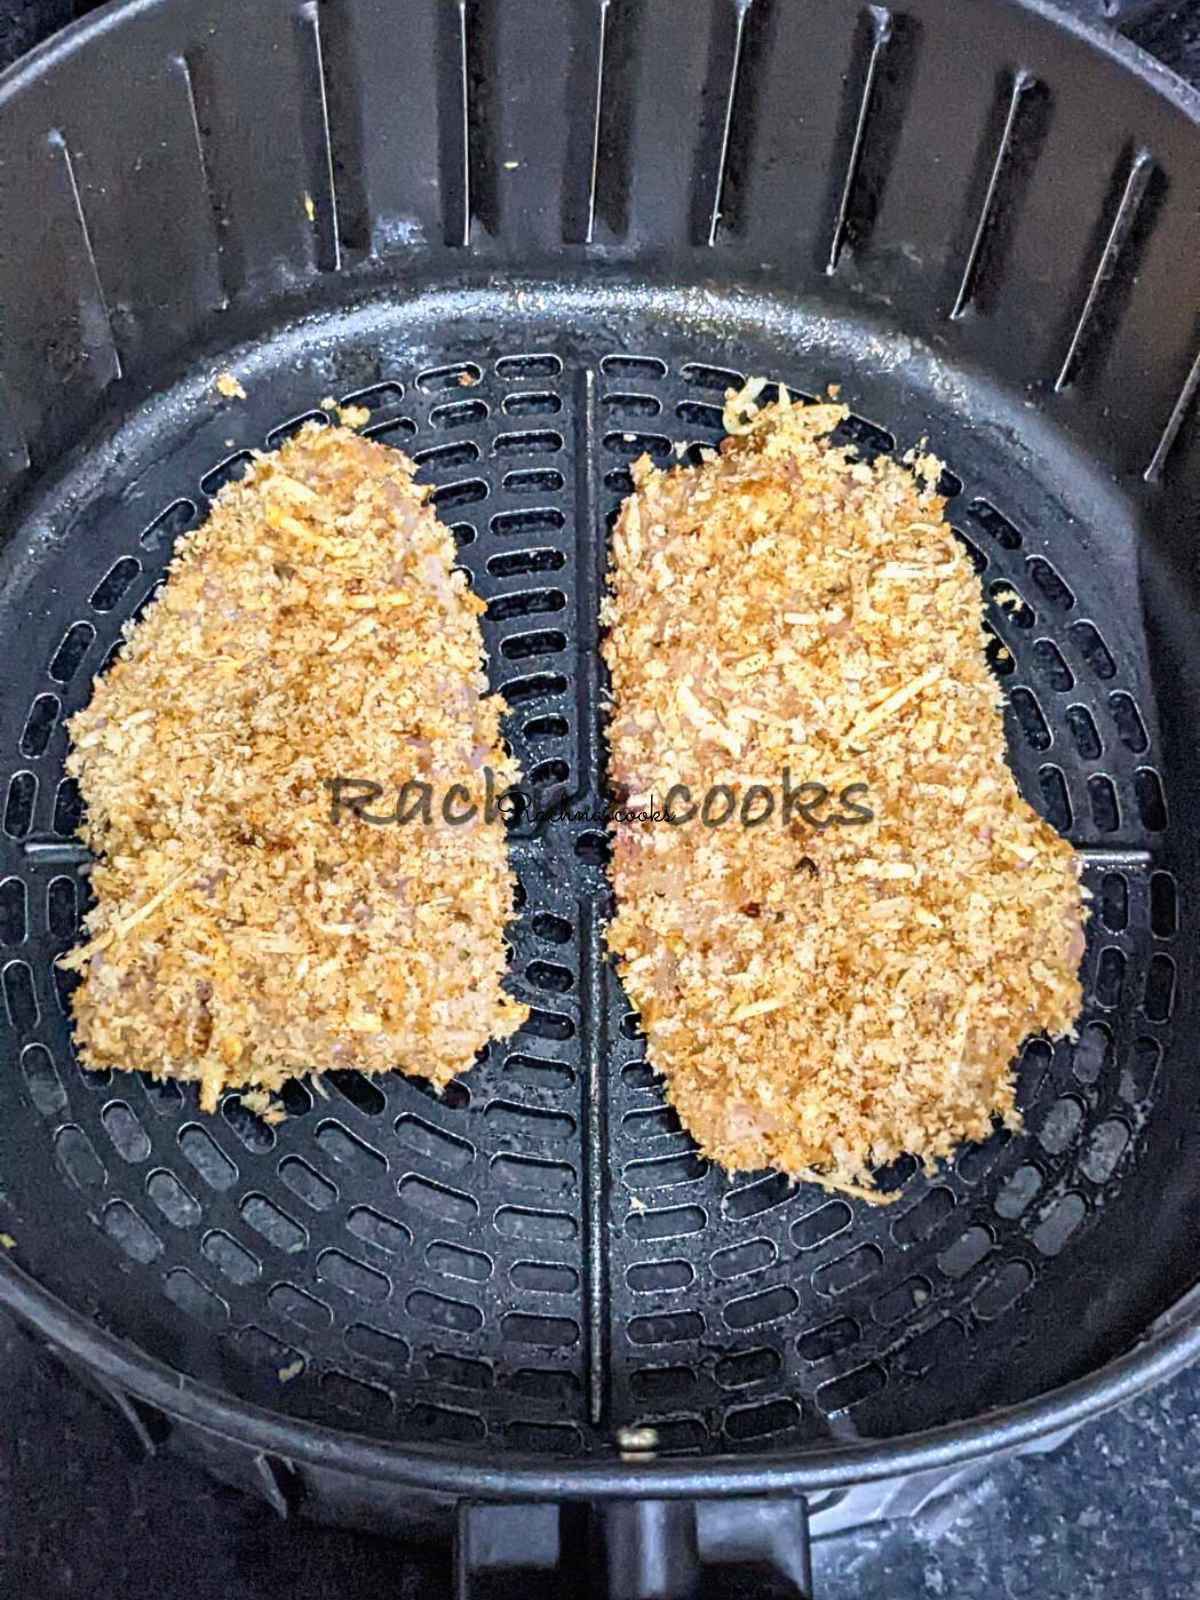 2 breaded chicken fillets in an air fryer basket